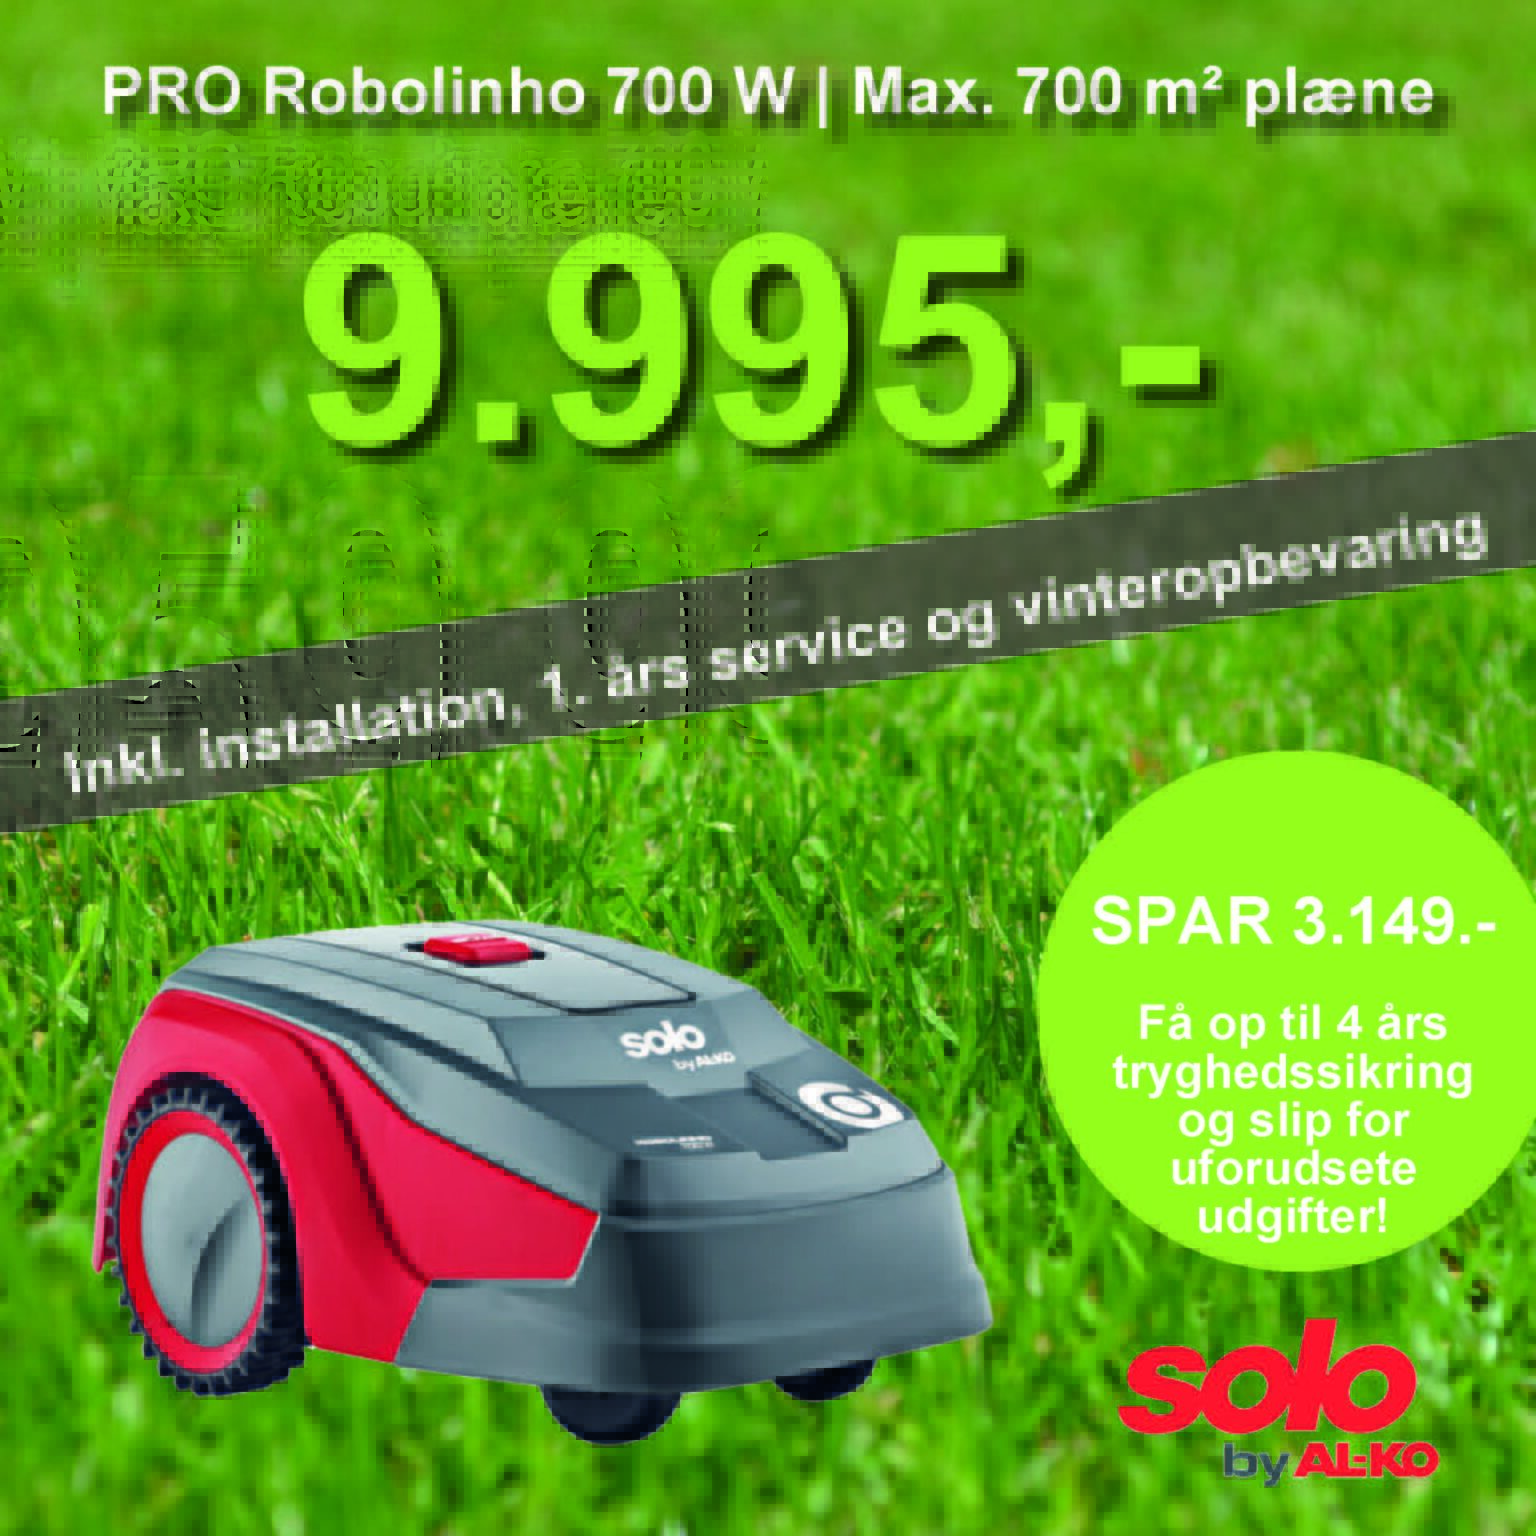 Solo robotplæneklipper premium PRO Robolinho 700 W - 700m2 inkl. installation, 1. års service og vinteropbevaring.